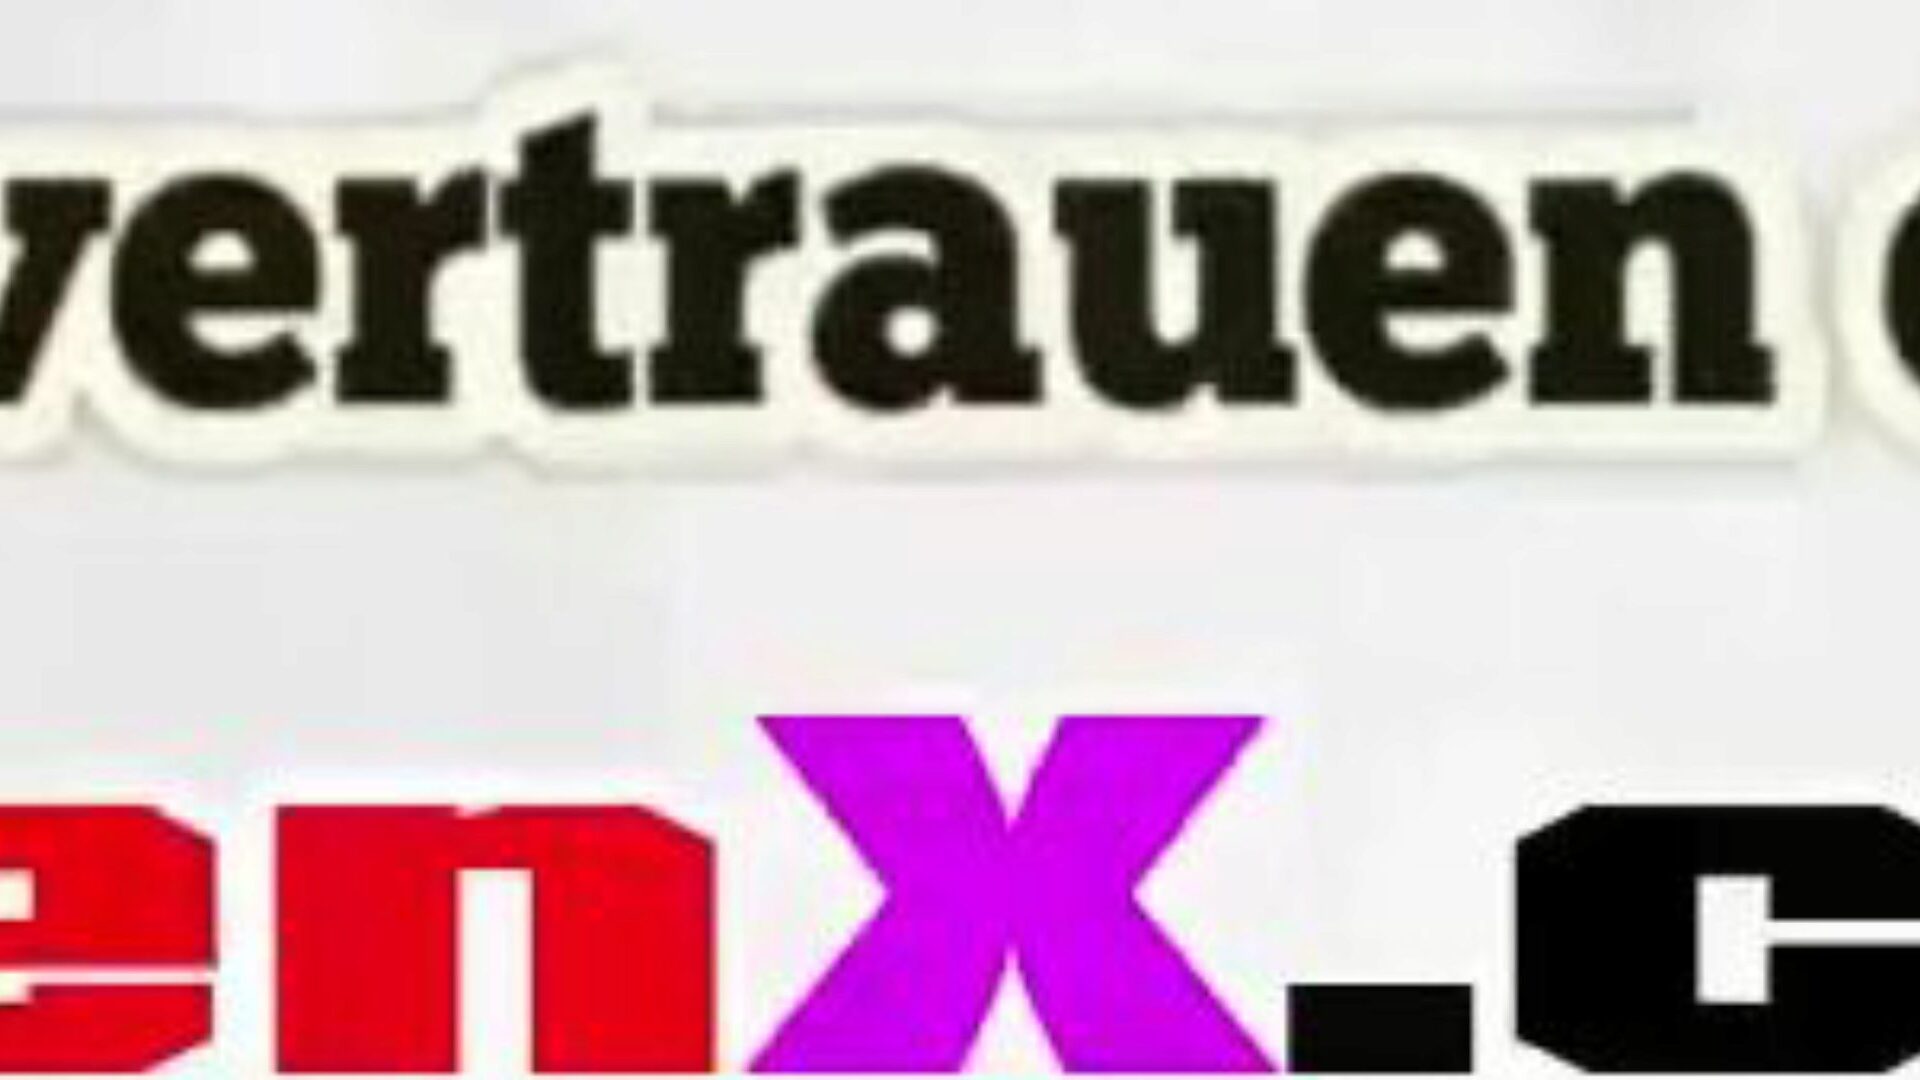 stiefmutter gefickt: ilmainen mutter saksa hd-porno video f5 katsella stiefmutter gefickt putki fuckfest-video ilmaiseksi kaikille for xhamster, hämmästyttävän kokoelman saksalaisen mutterin saksan ja mutter tochterin hd-pornografisten elokuvien kohtauksia